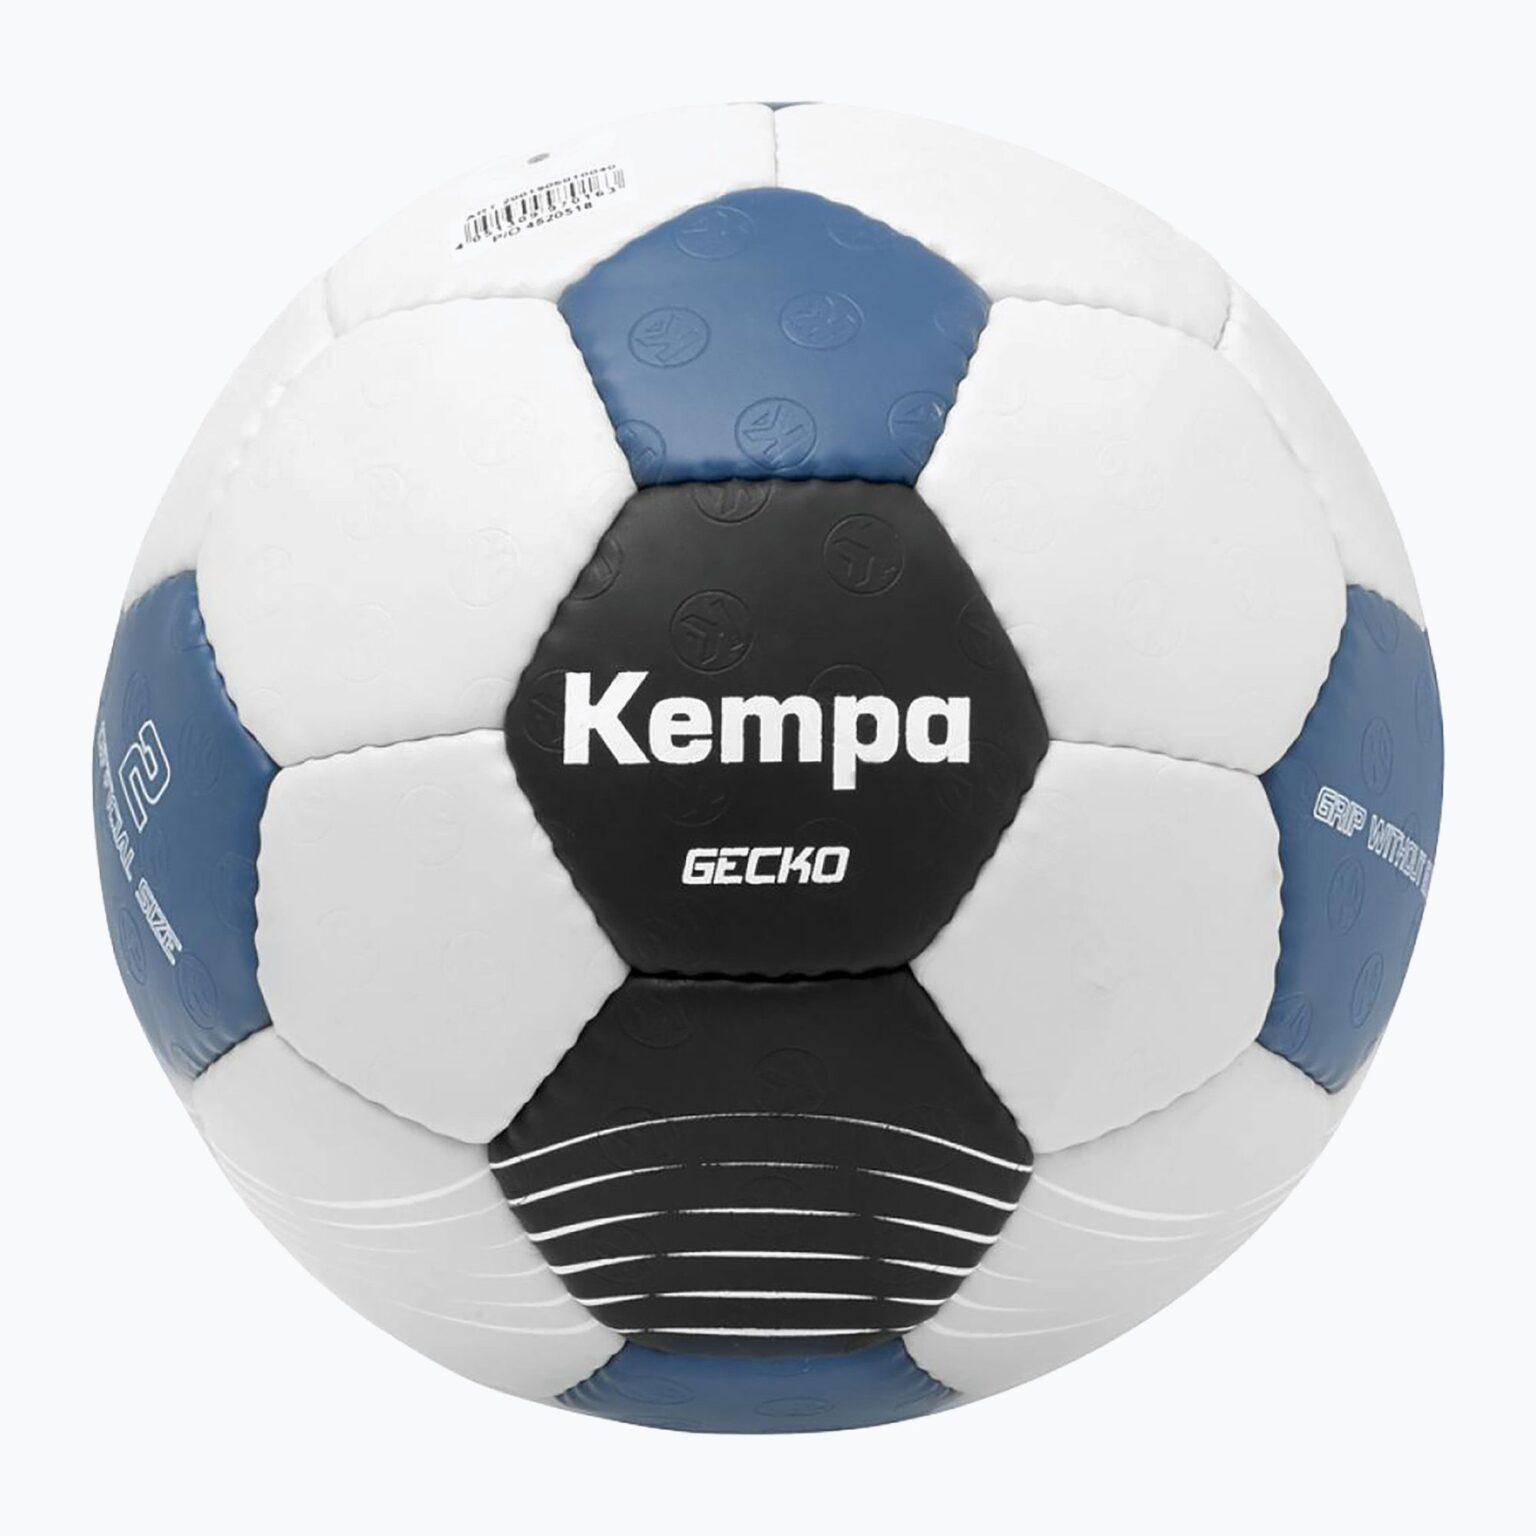 Piłka do piłki ręcznej Kempa Gecko szara/niebieska rozmiar 3